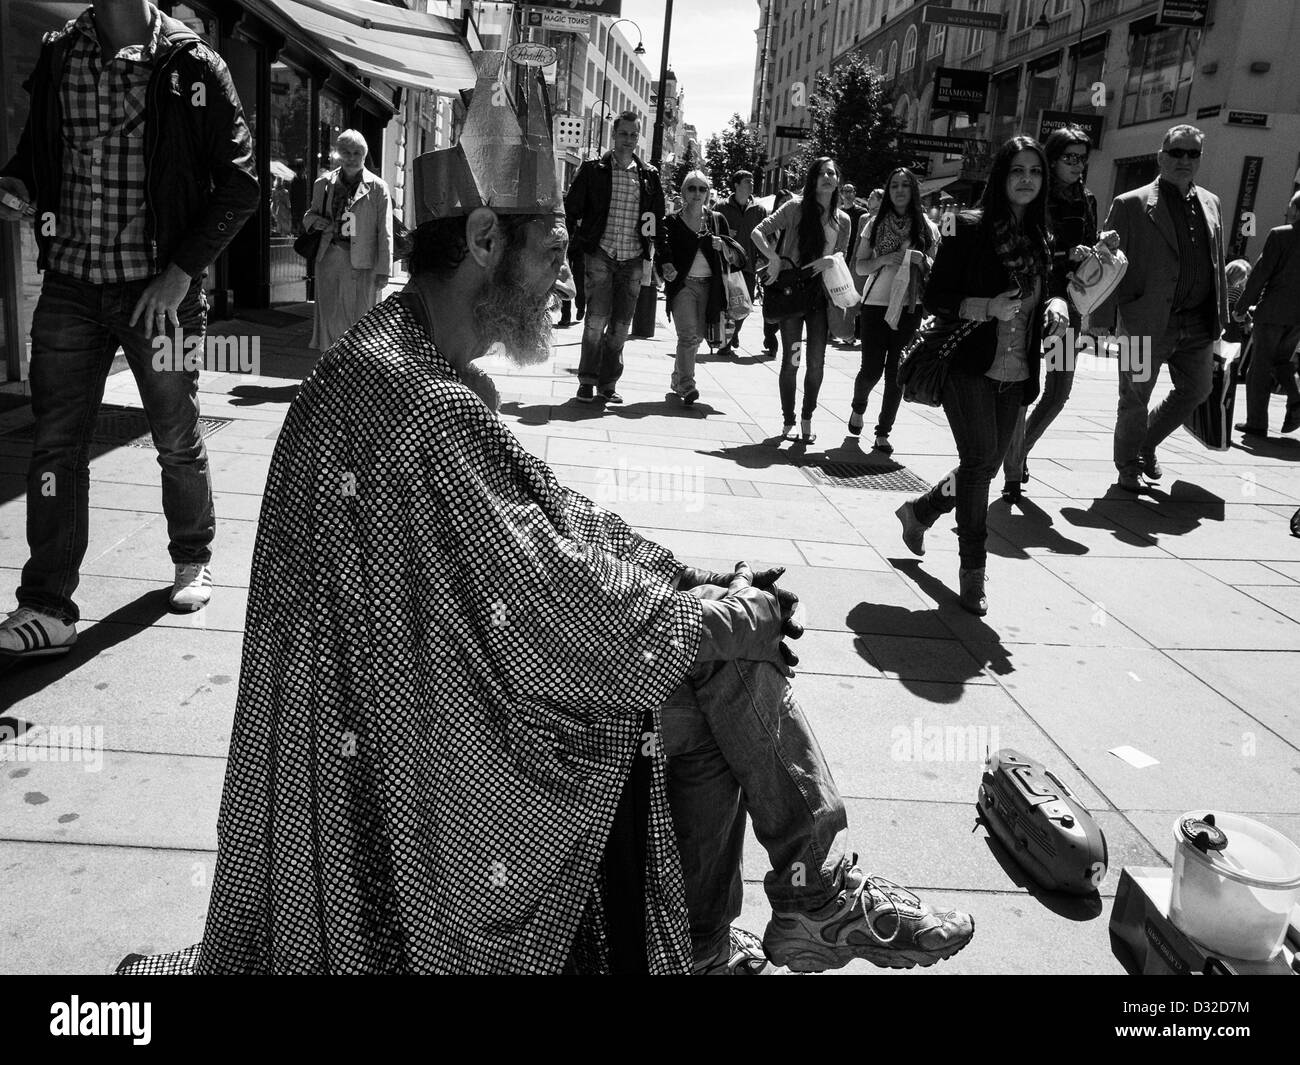 Vieux clown sur une rue avec des rois couronne et manteau brillant Banque D'Images